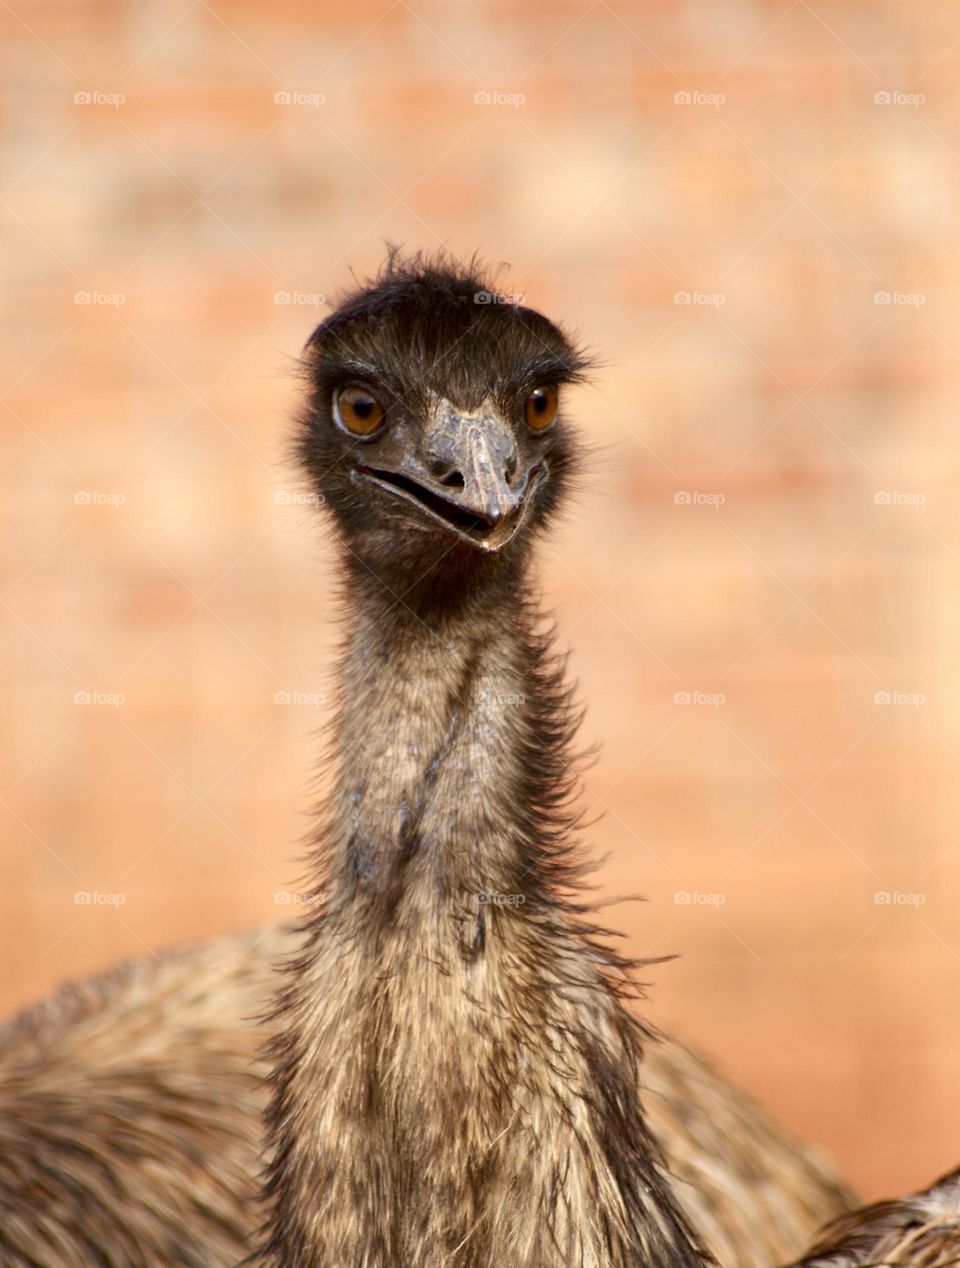 An emu 